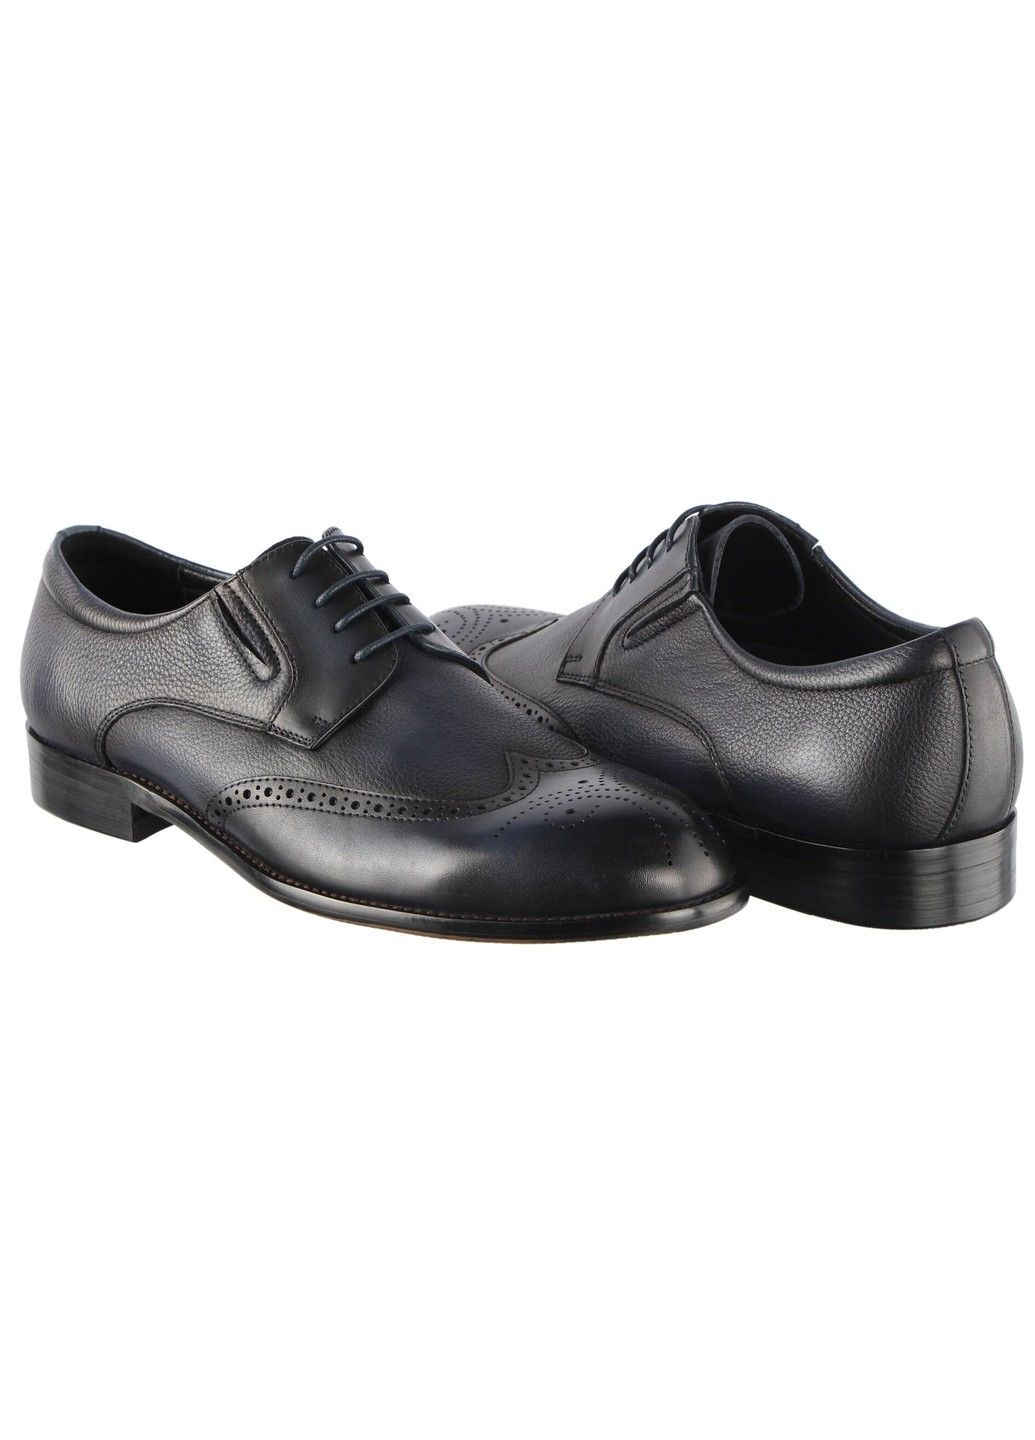 Черные мужские классические туфли 196257 Buts на шнурках